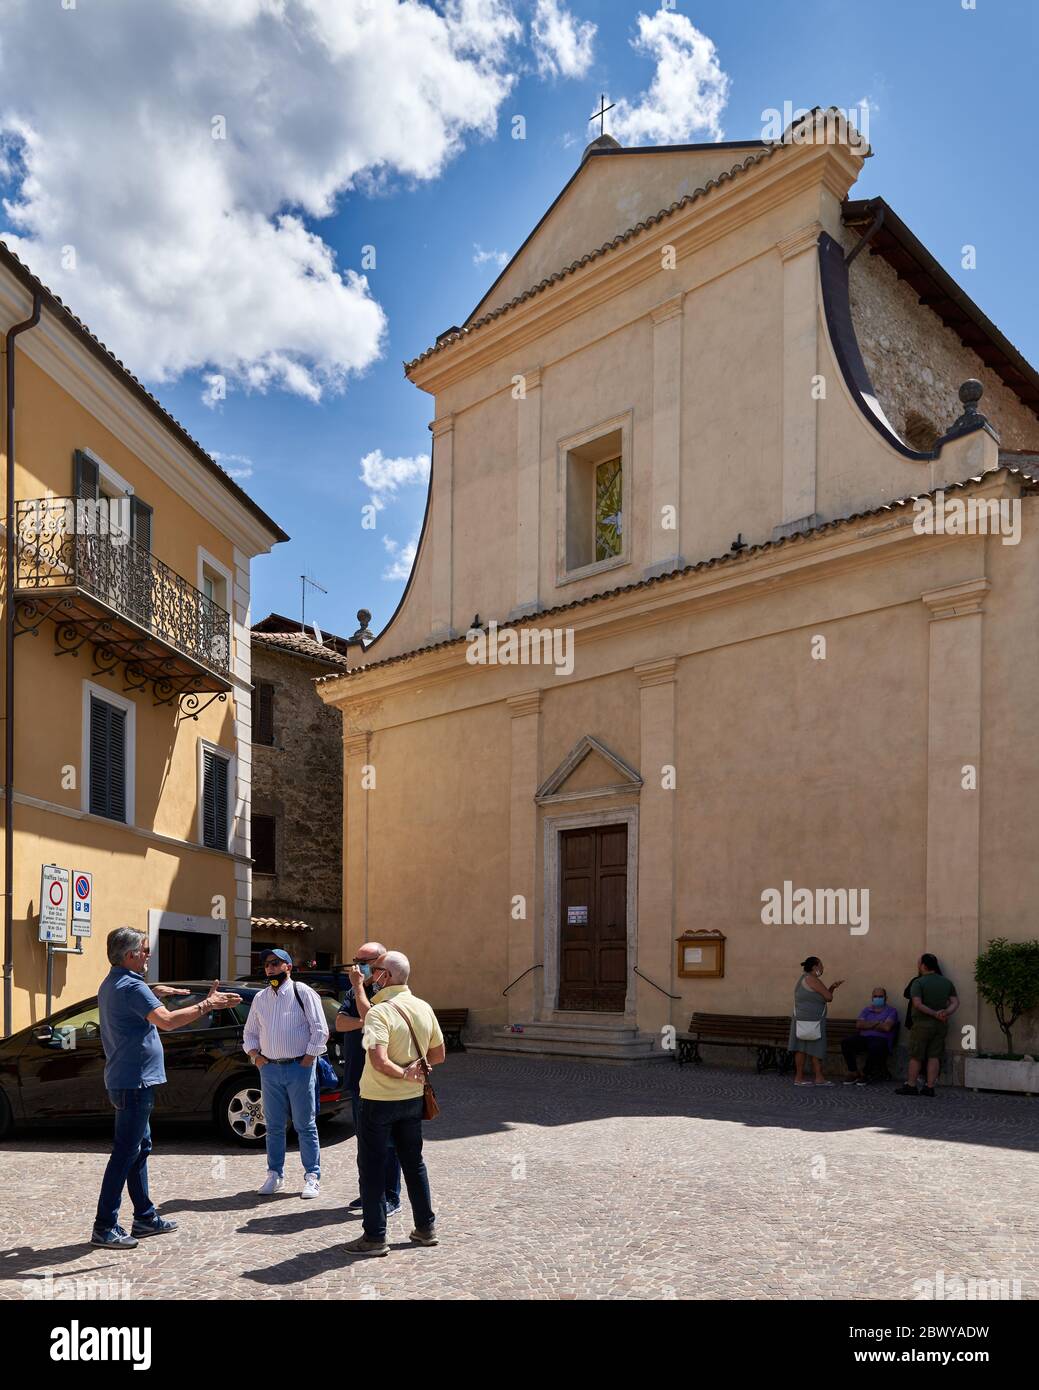 Trois hommes parlent en bon esprit dans une petite ville italienne typique de la place principale en face de l'église après trois mois dur de verrouillage du coronavirus Banque D'Images